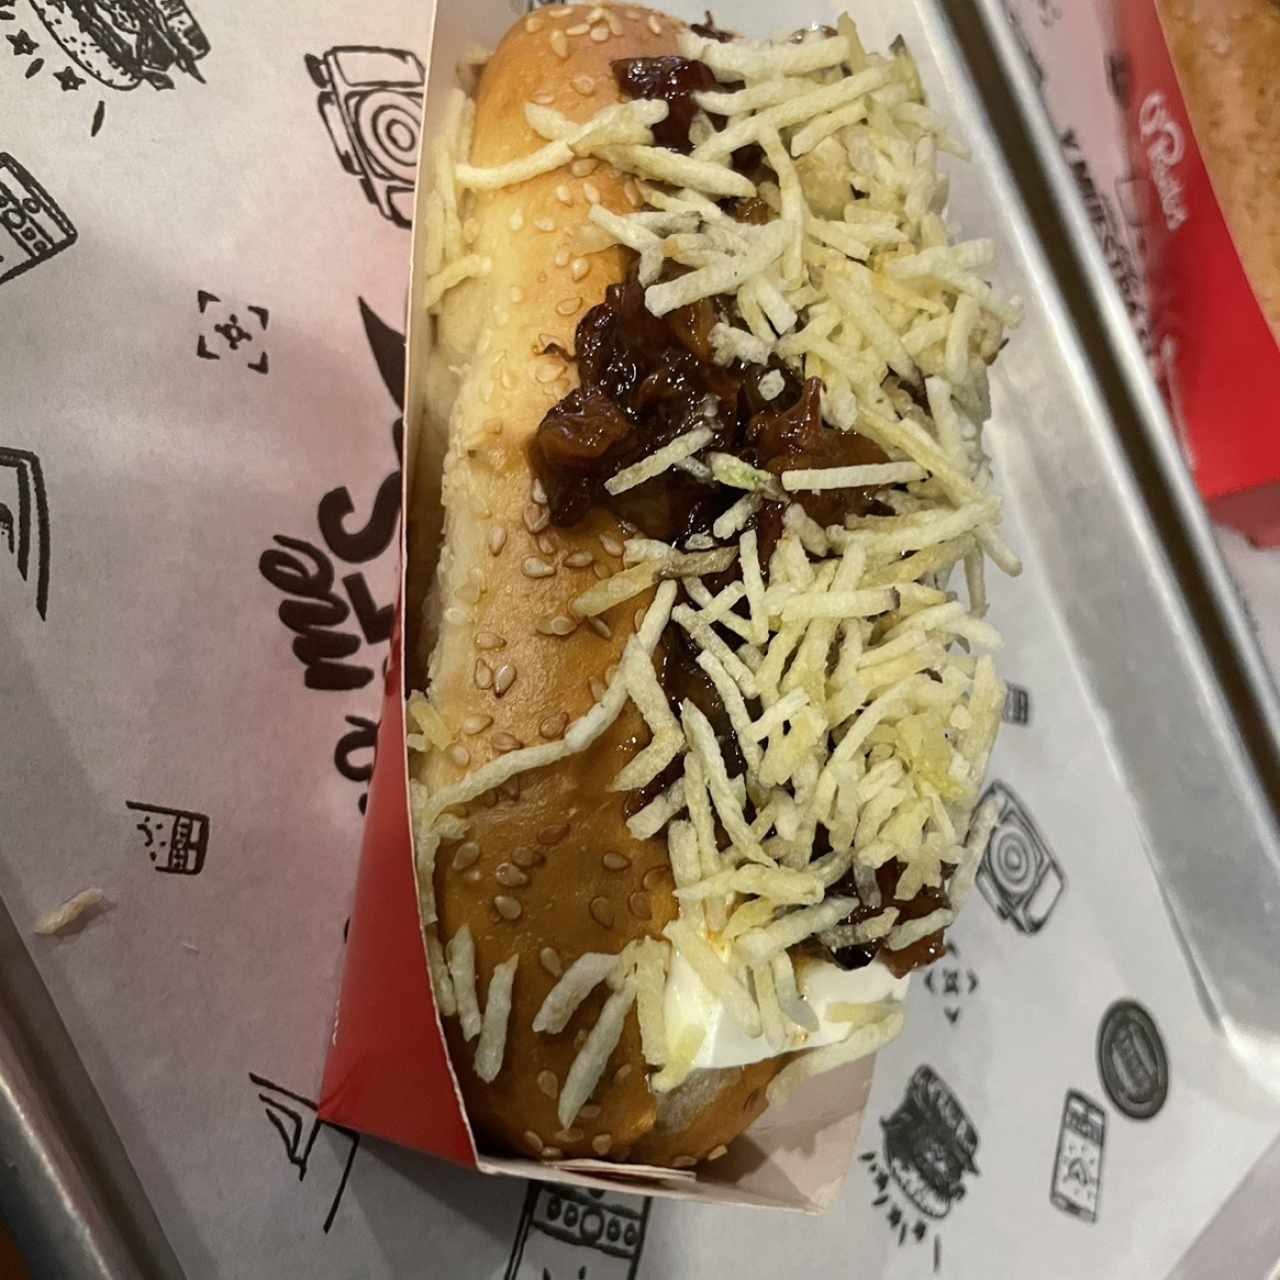 Hot Dog - Real Dog